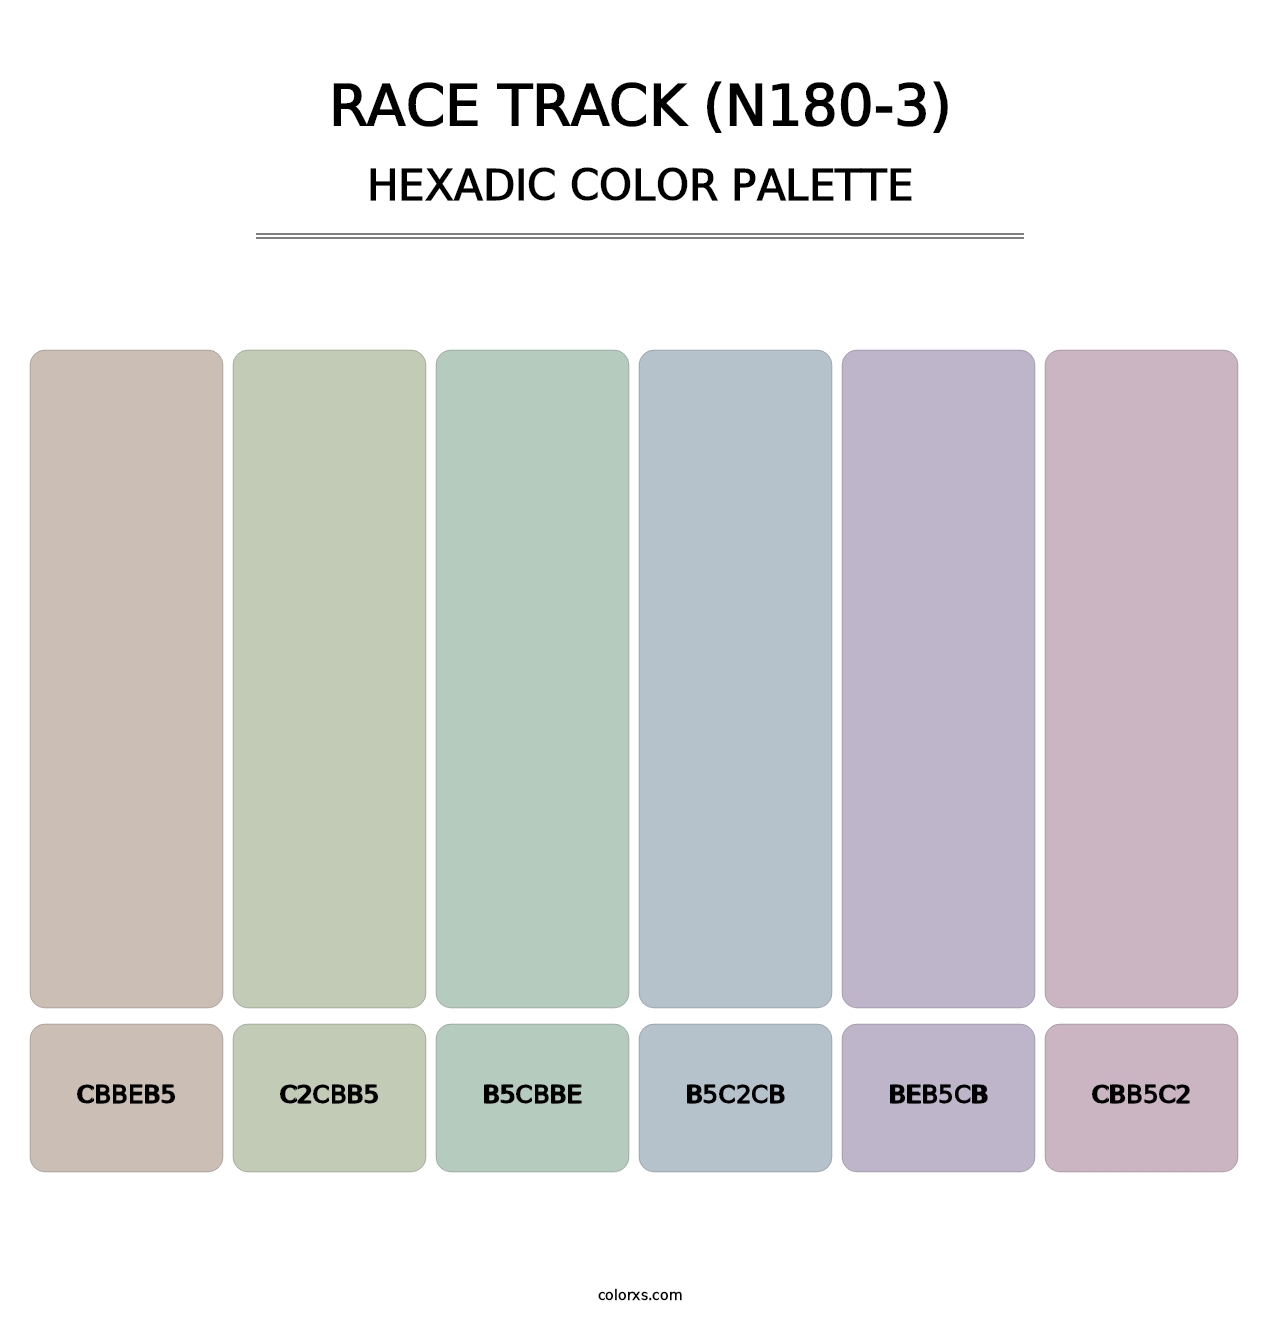 Race Track (N180-3) - Hexadic Color Palette